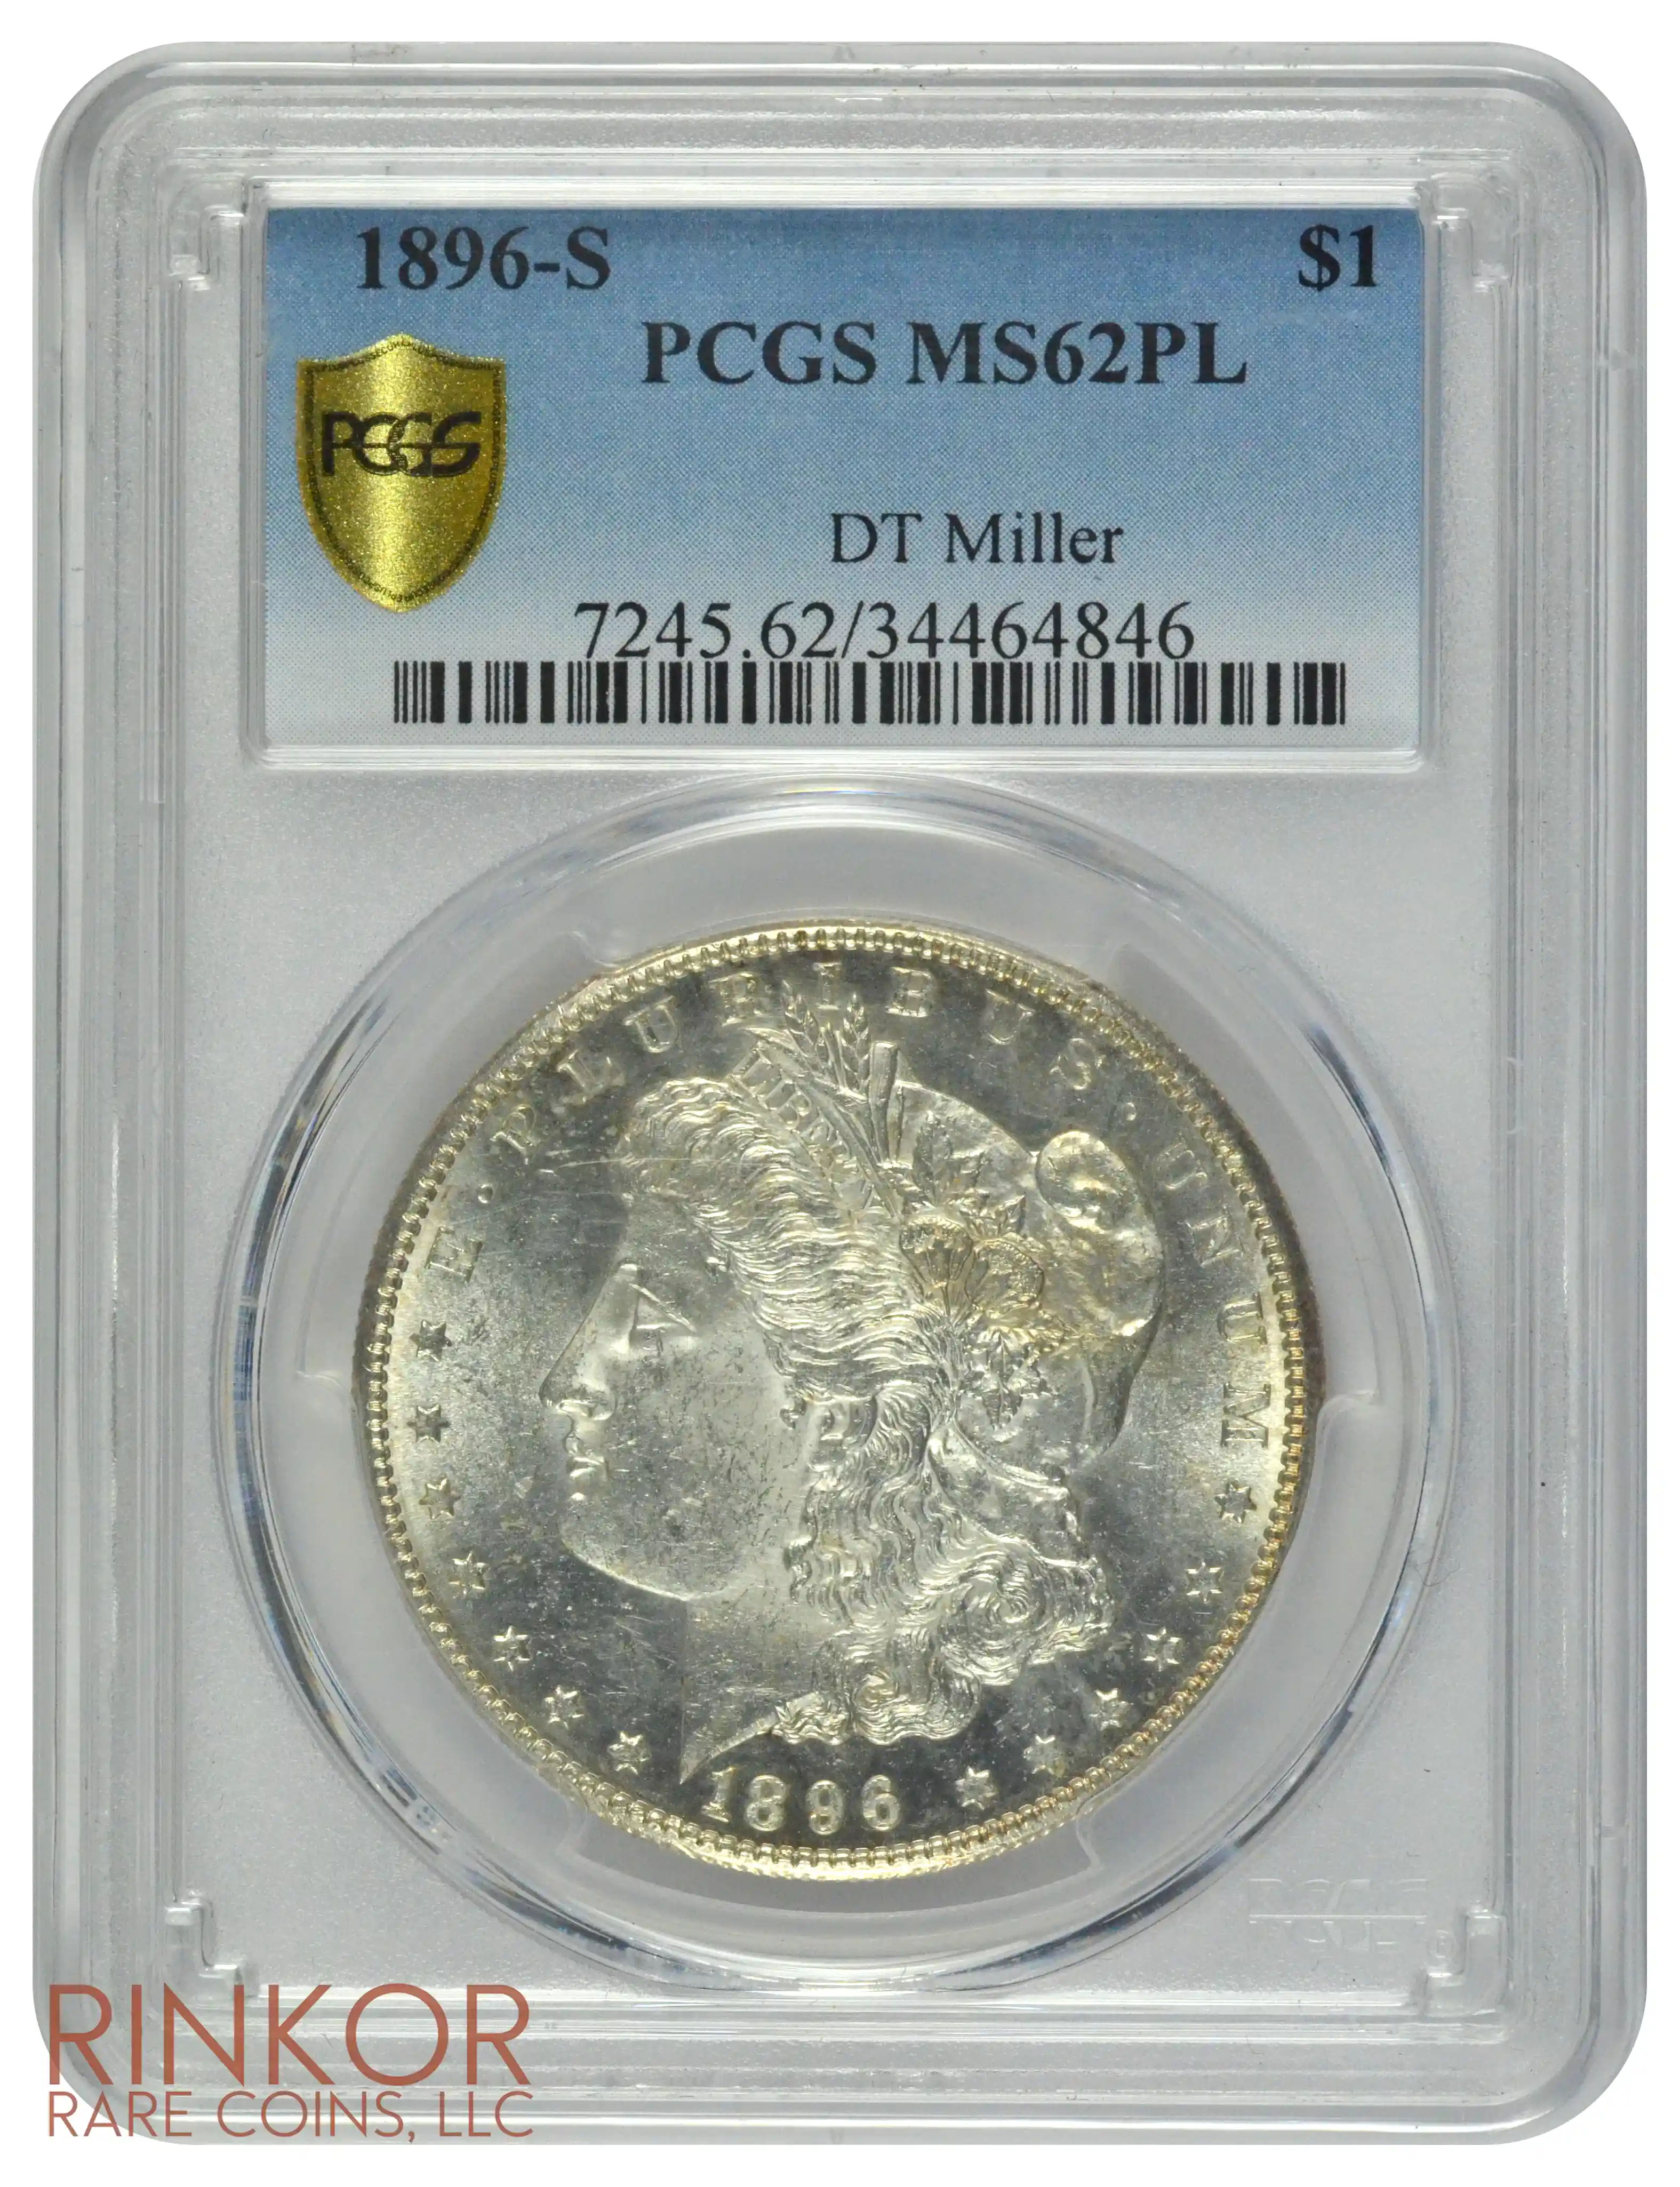 1896-S $1 PCGS MS 62 PL